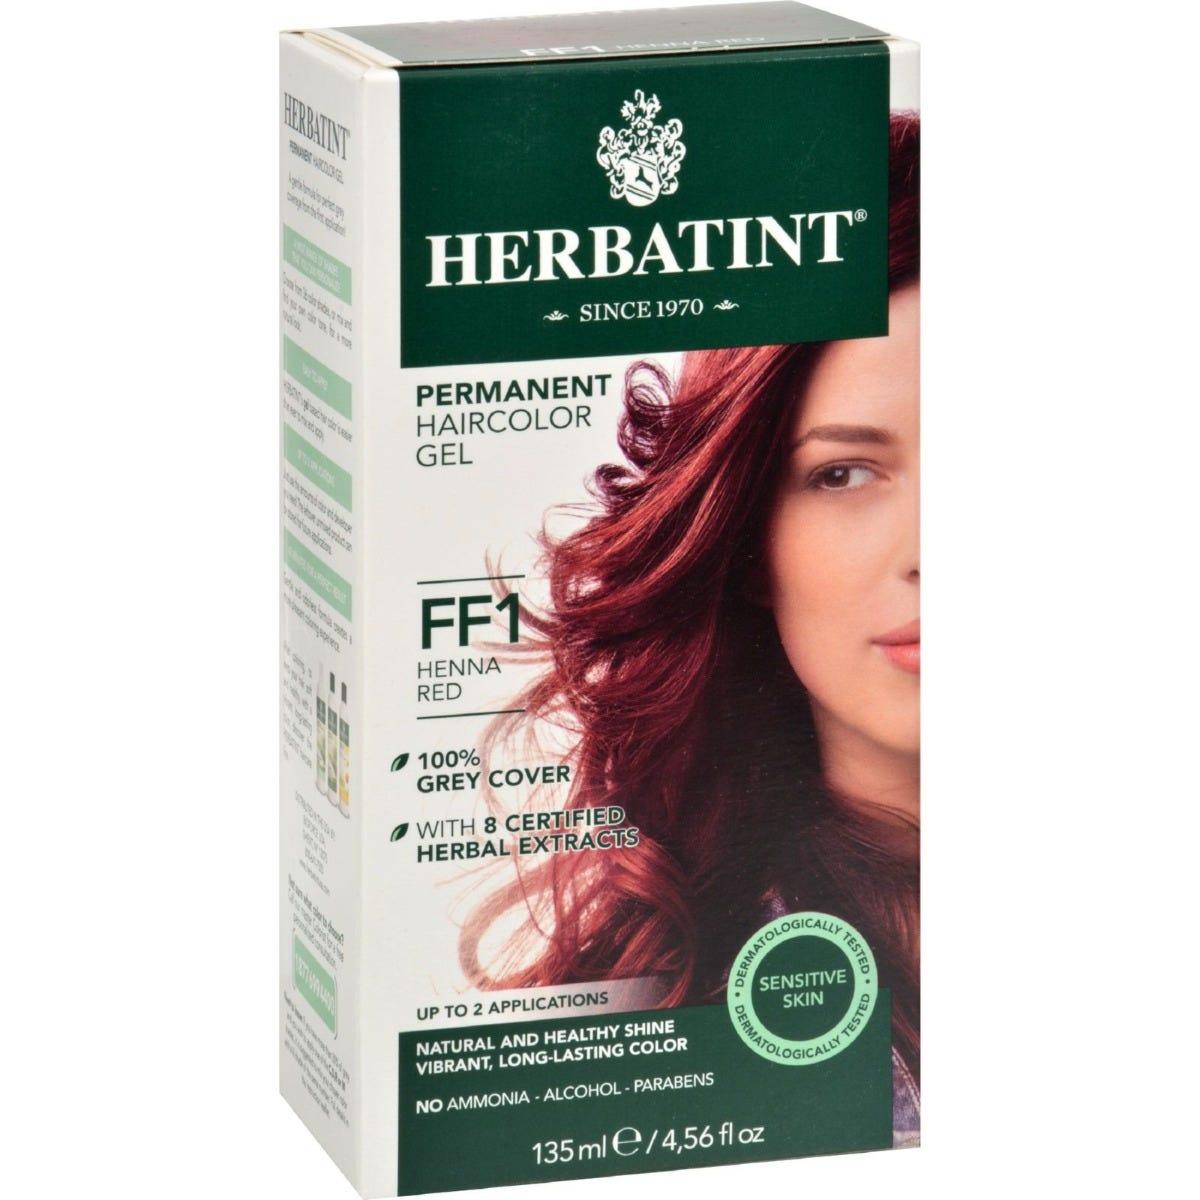 Herbatint FF 1 Henna Red 135ml